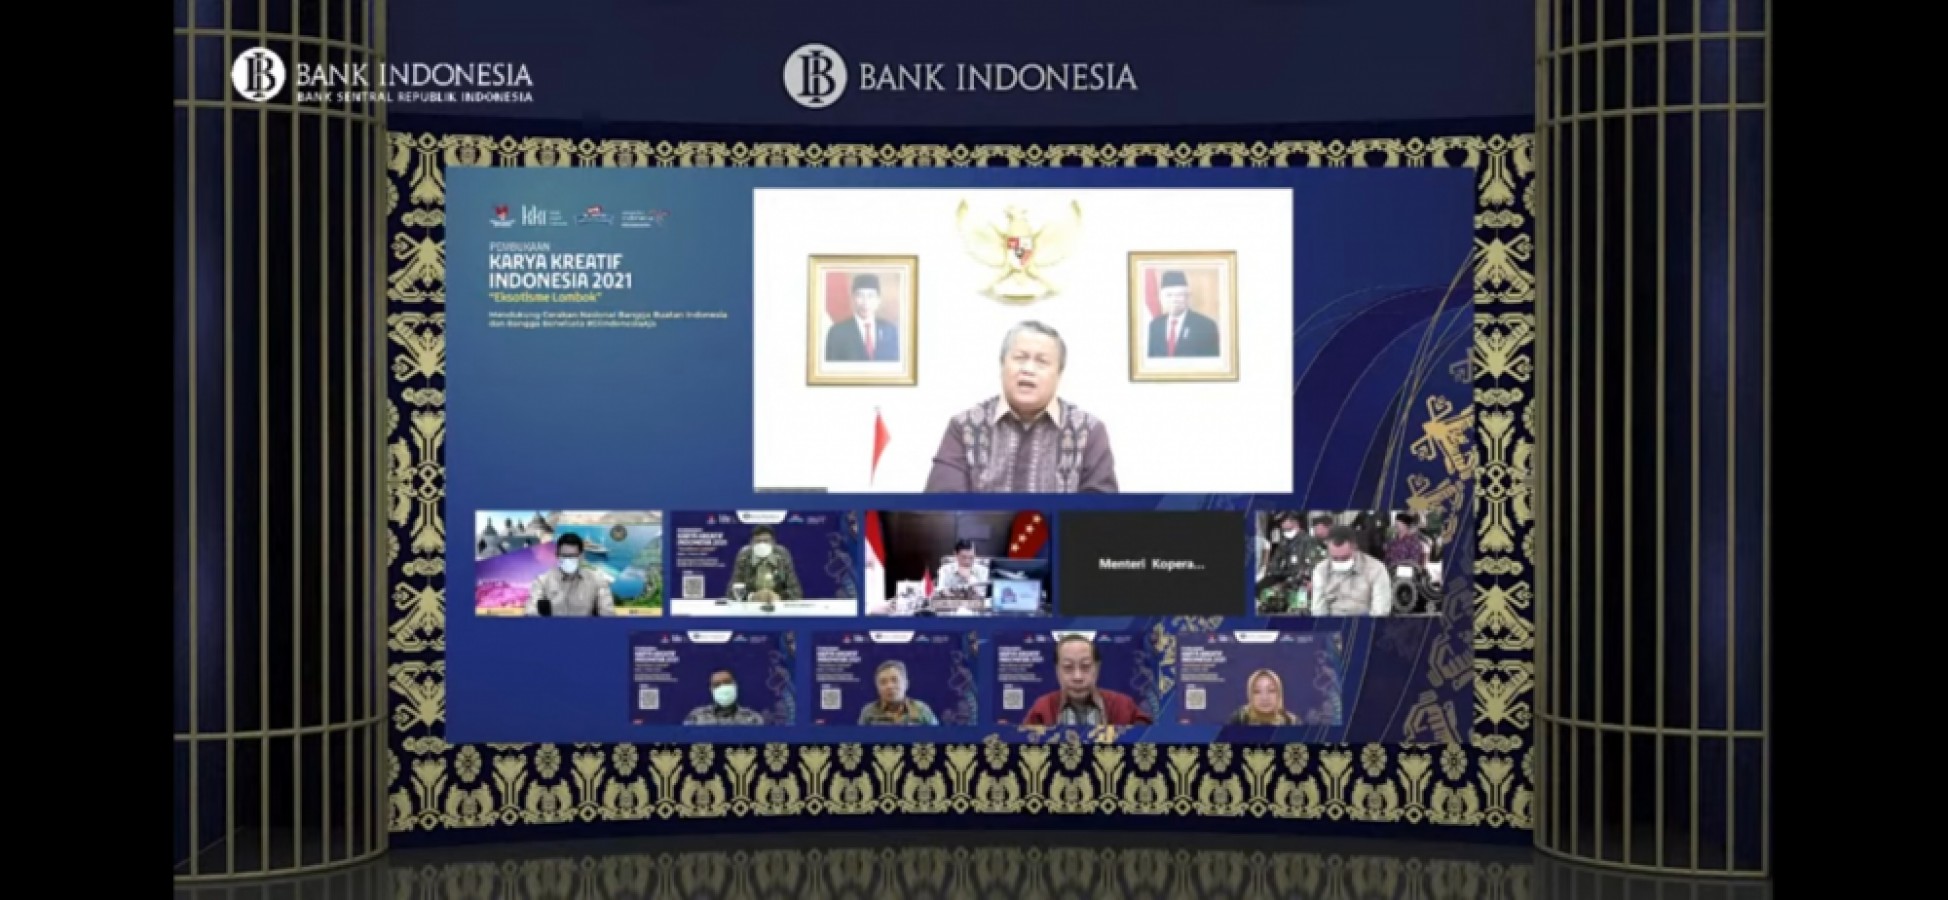 4 Upaya BI Sukseskan Karya Kreaktif Indonesia